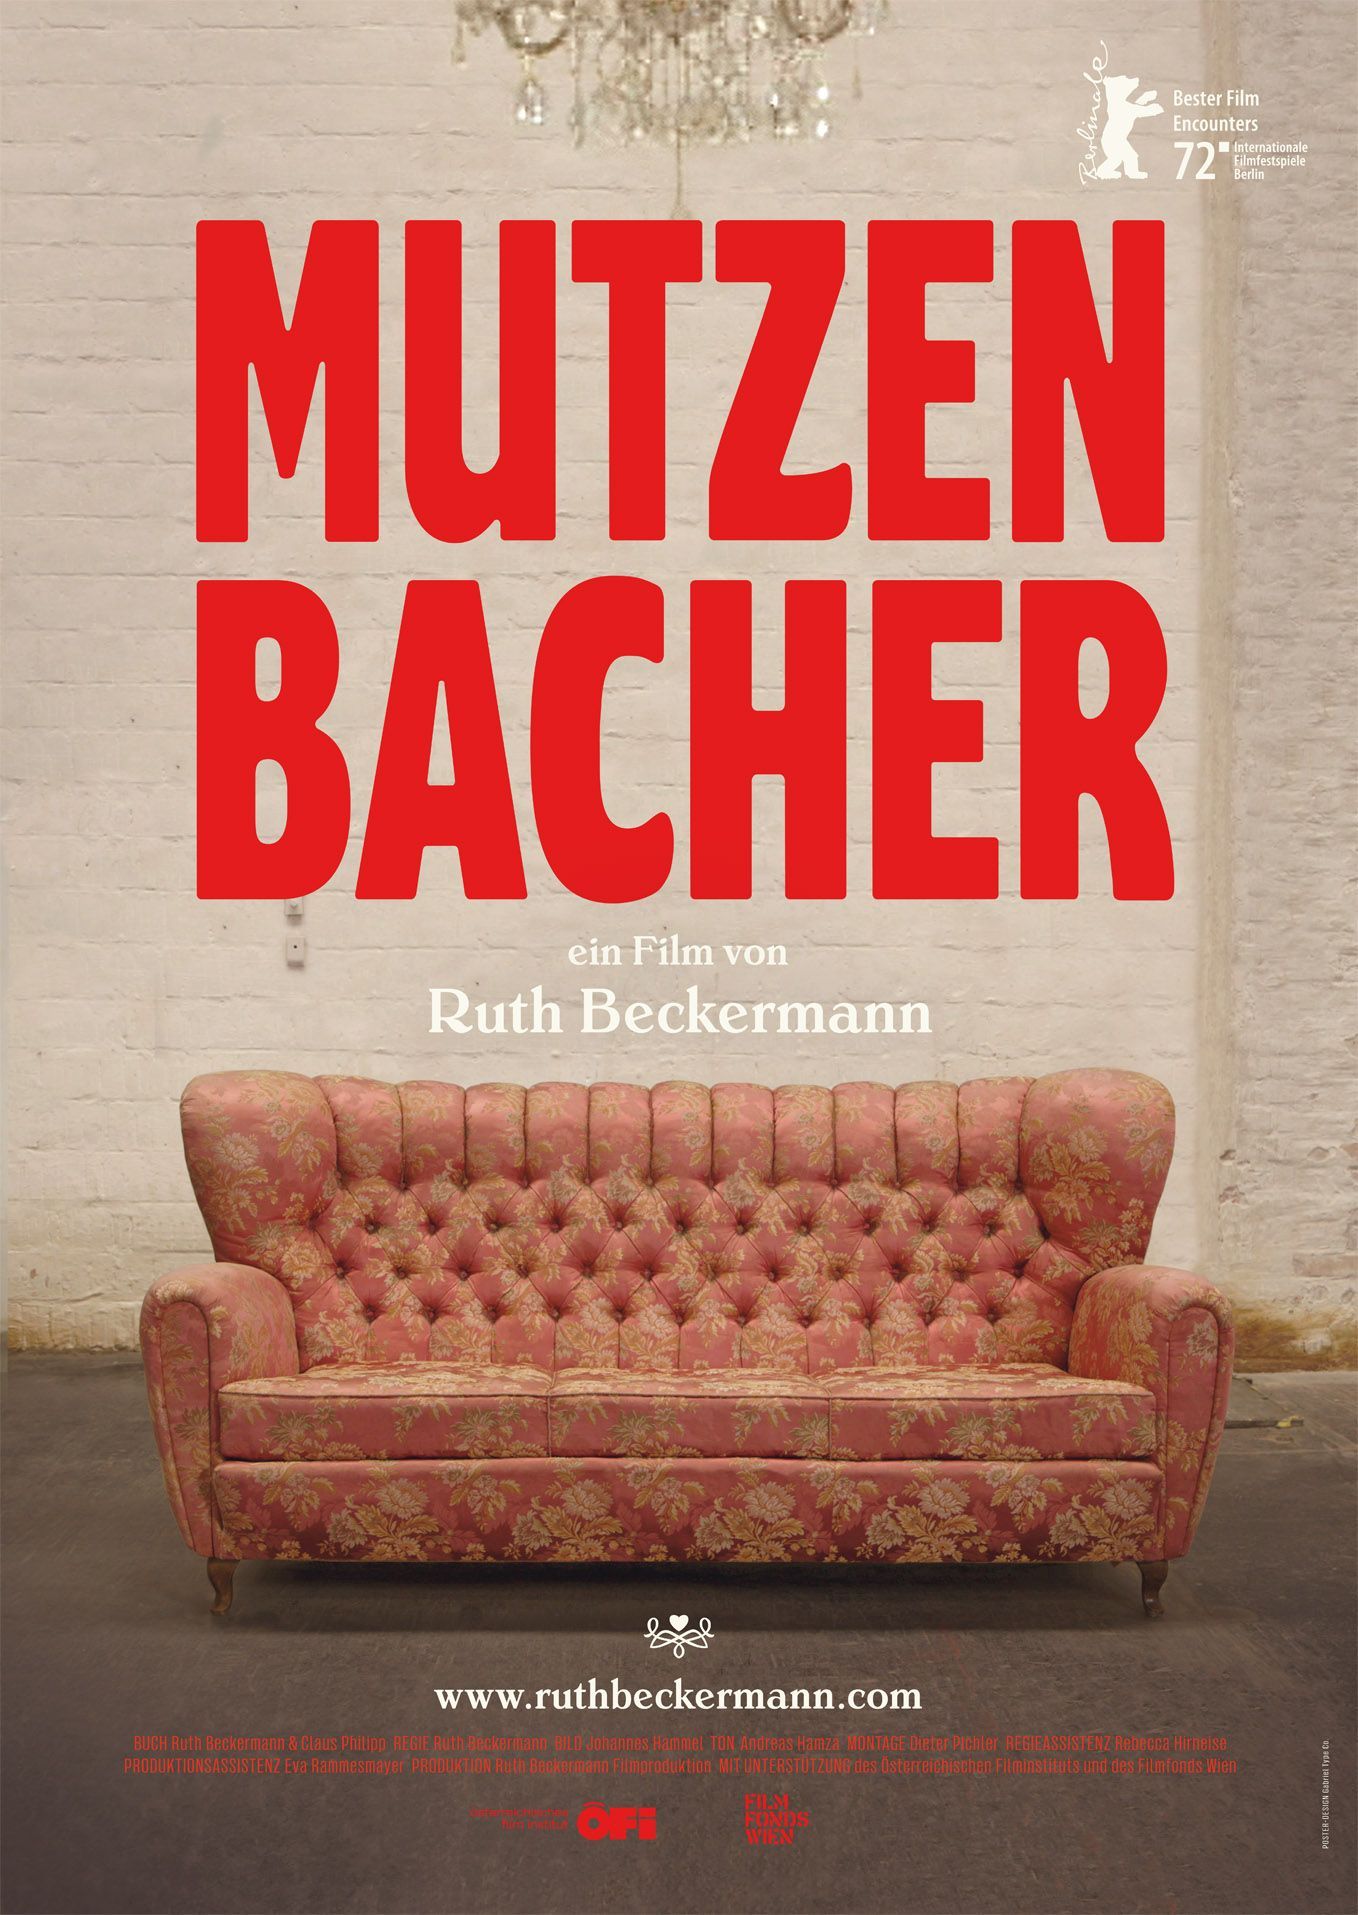 The Talking Cure: On Ruth Beckermann’s “Mutzenbacher”